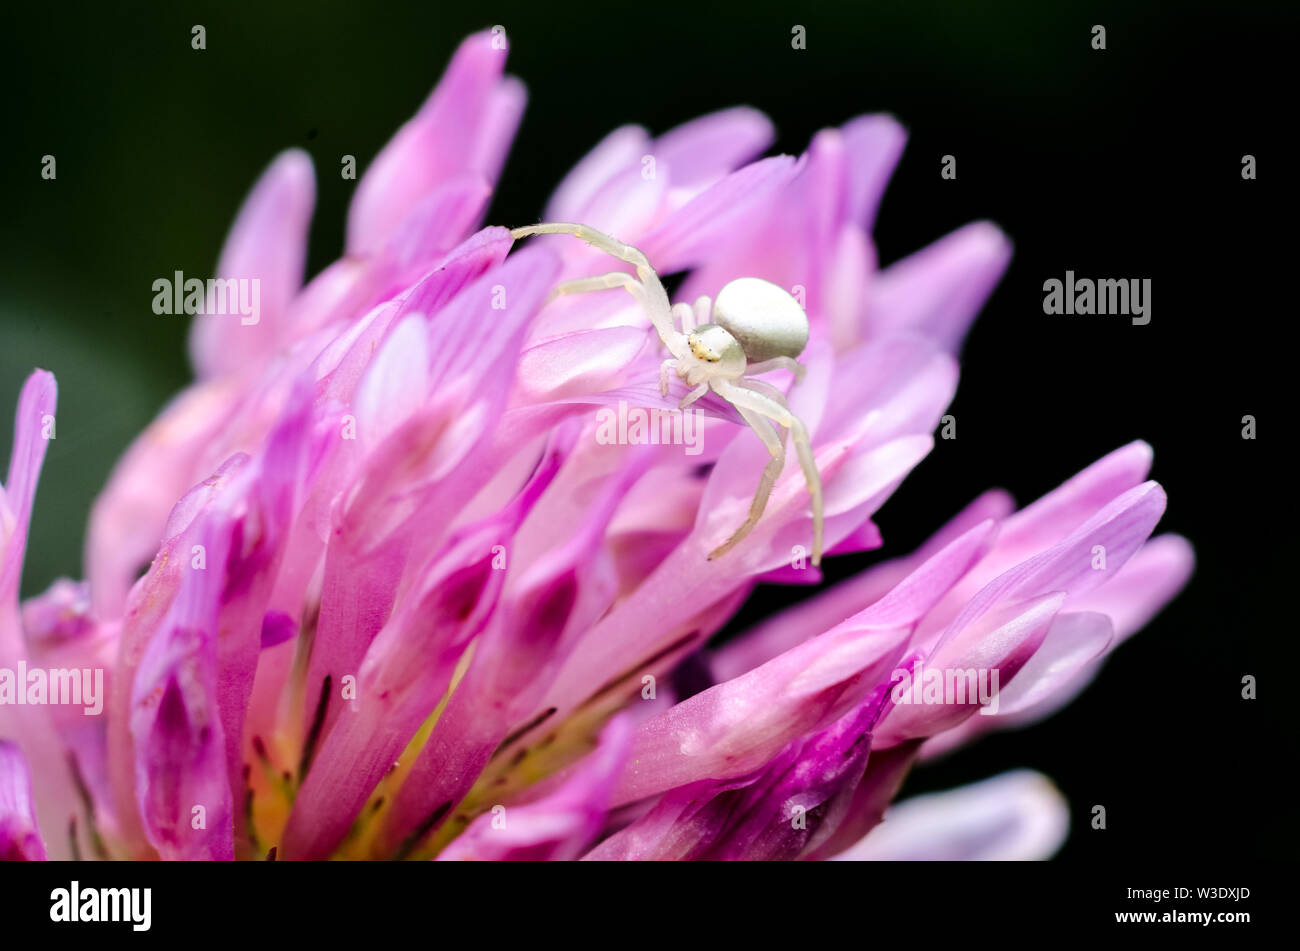 Thomisidae, Makro Foto von einem winzigen crab Spider auf Lila Blume Stockfoto